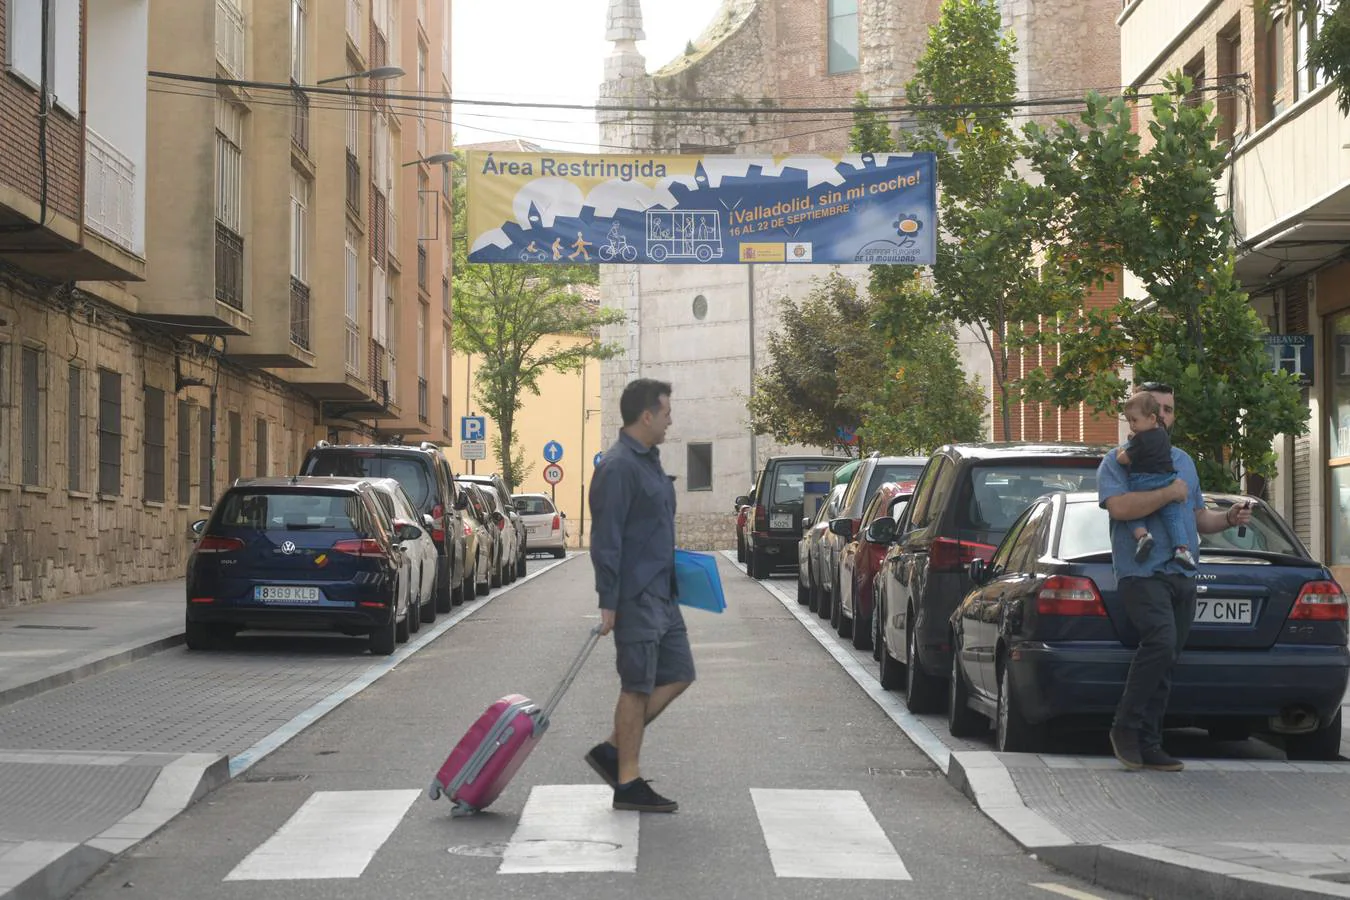 Fotos: Día sin coche en Valladolid